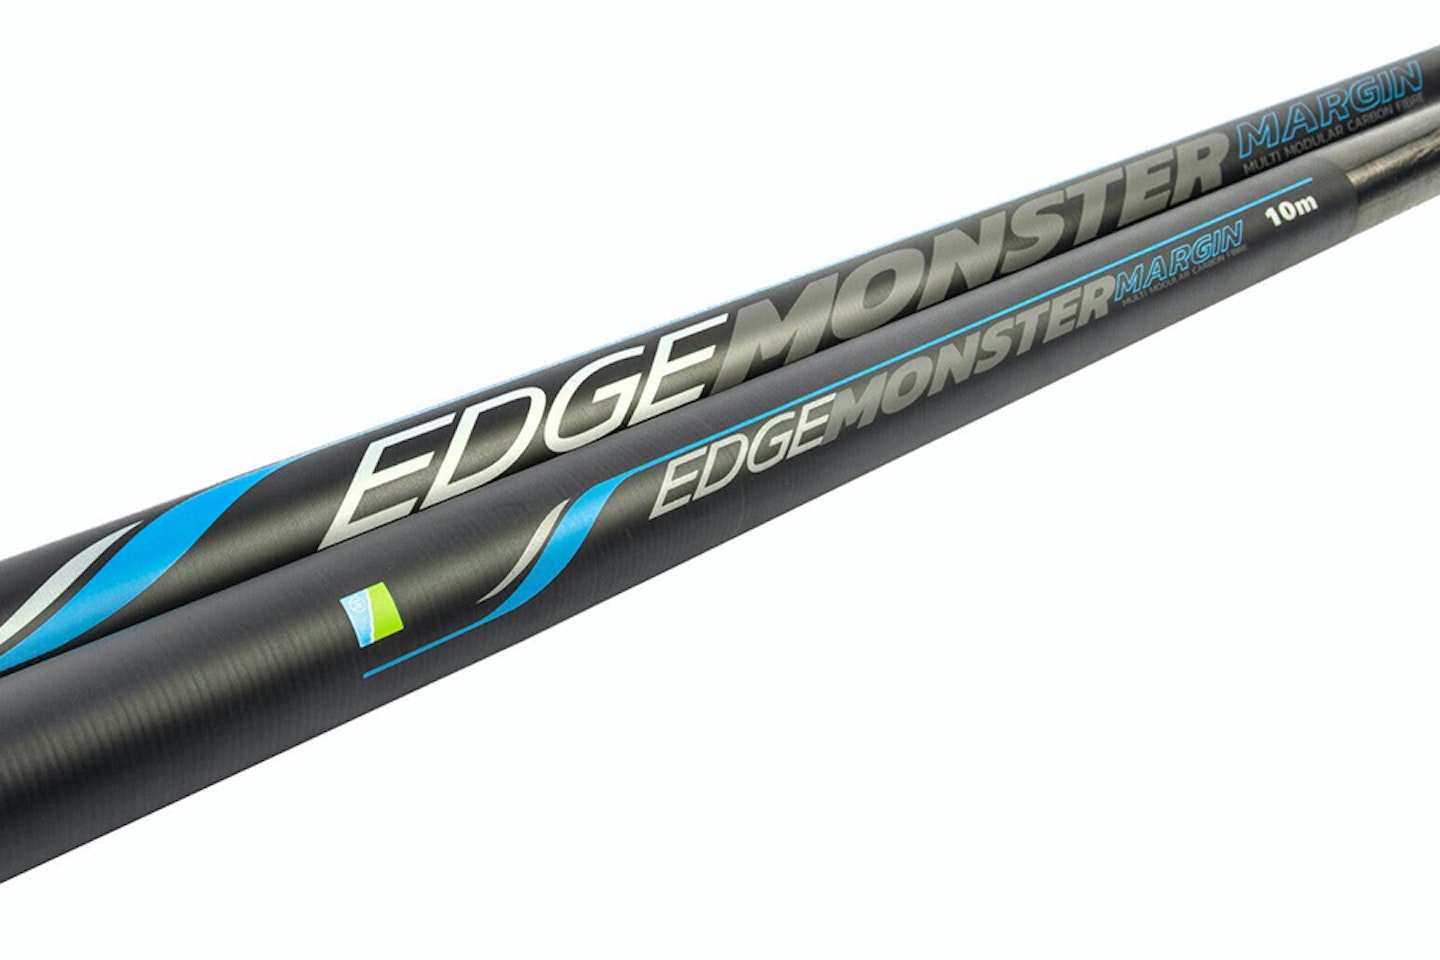 Preston Innovations Edge Monster 10m / Edge Monster 8.5m